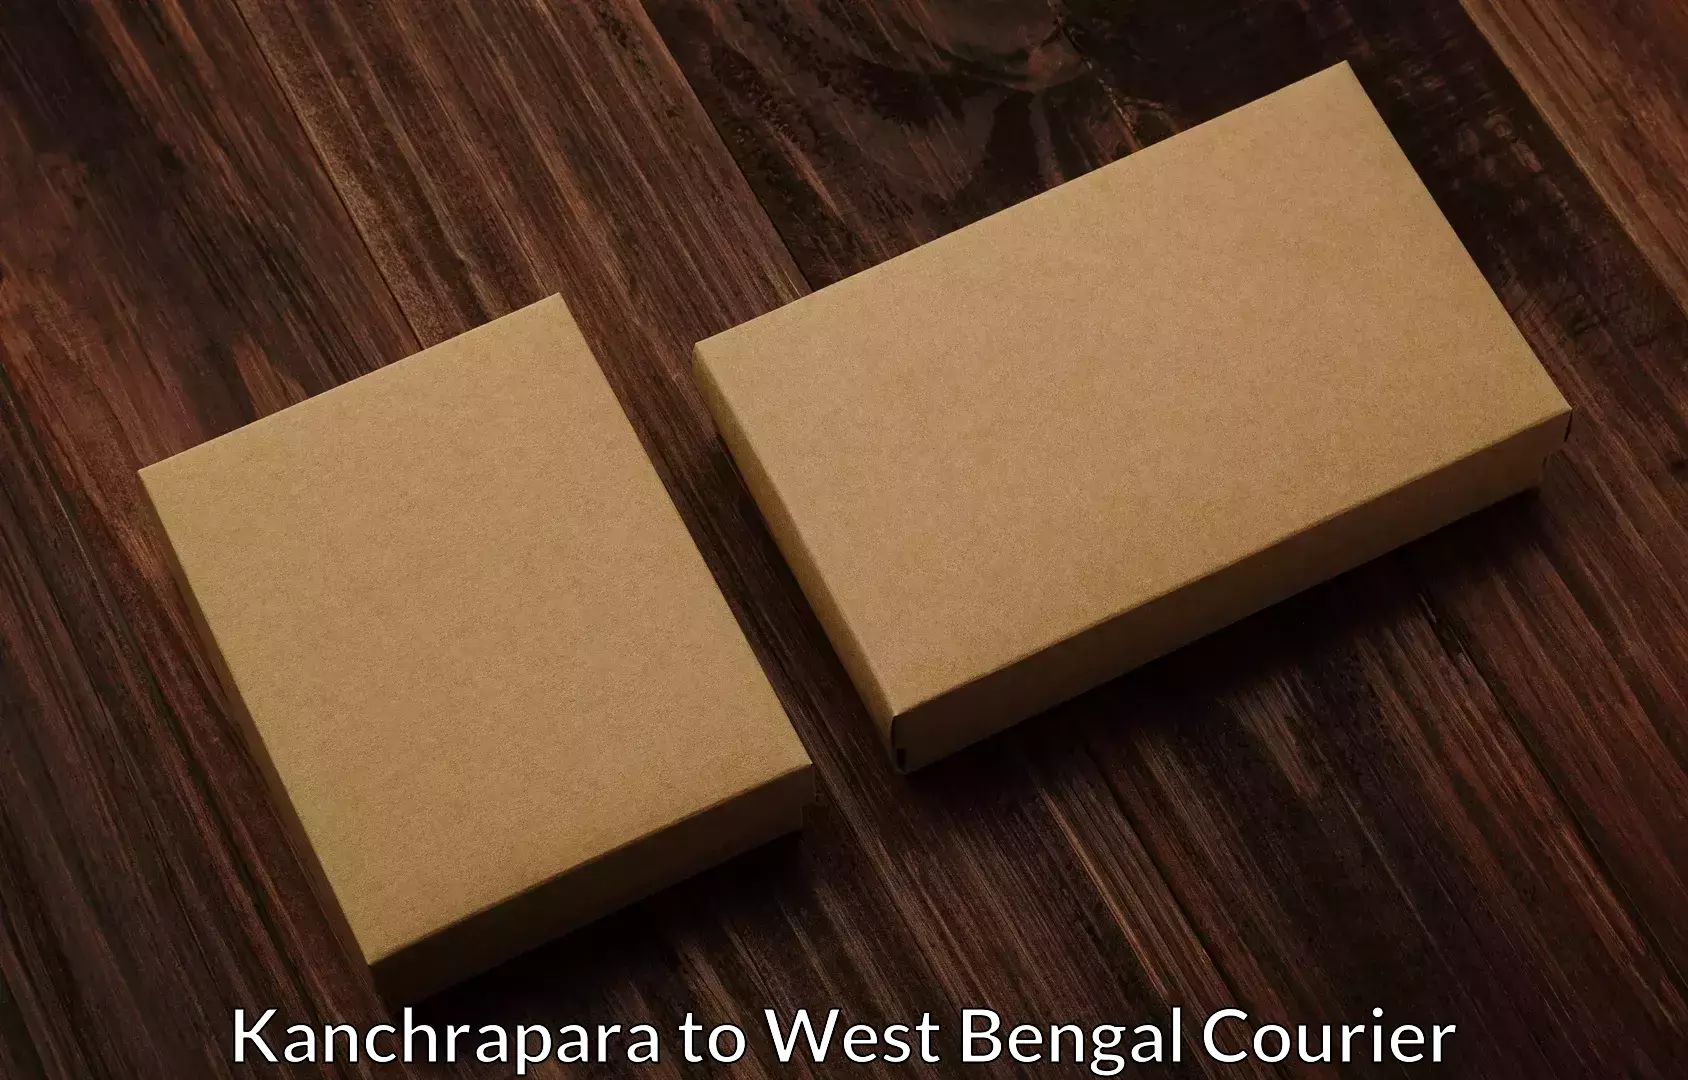 Furniture moving experts Kanchrapara to Ama Dubi